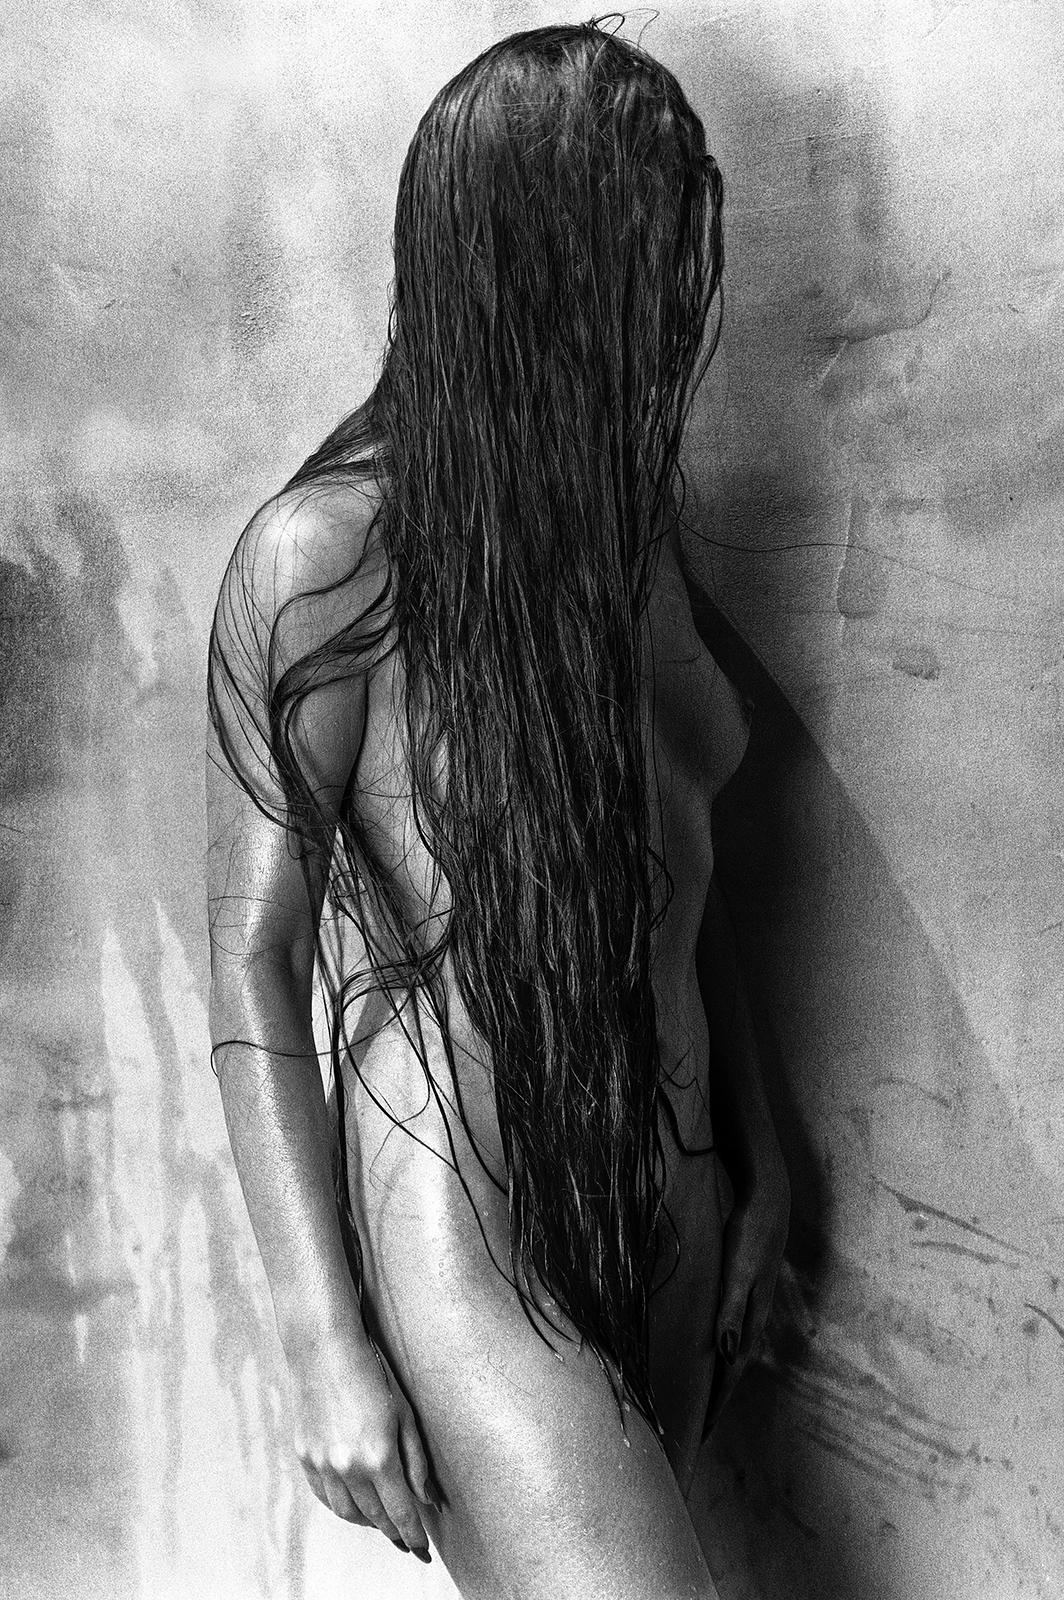 Sarah 2 - Impression de nu en édition limitée signée, blanc et noir, surdimensionnée, contemporaine